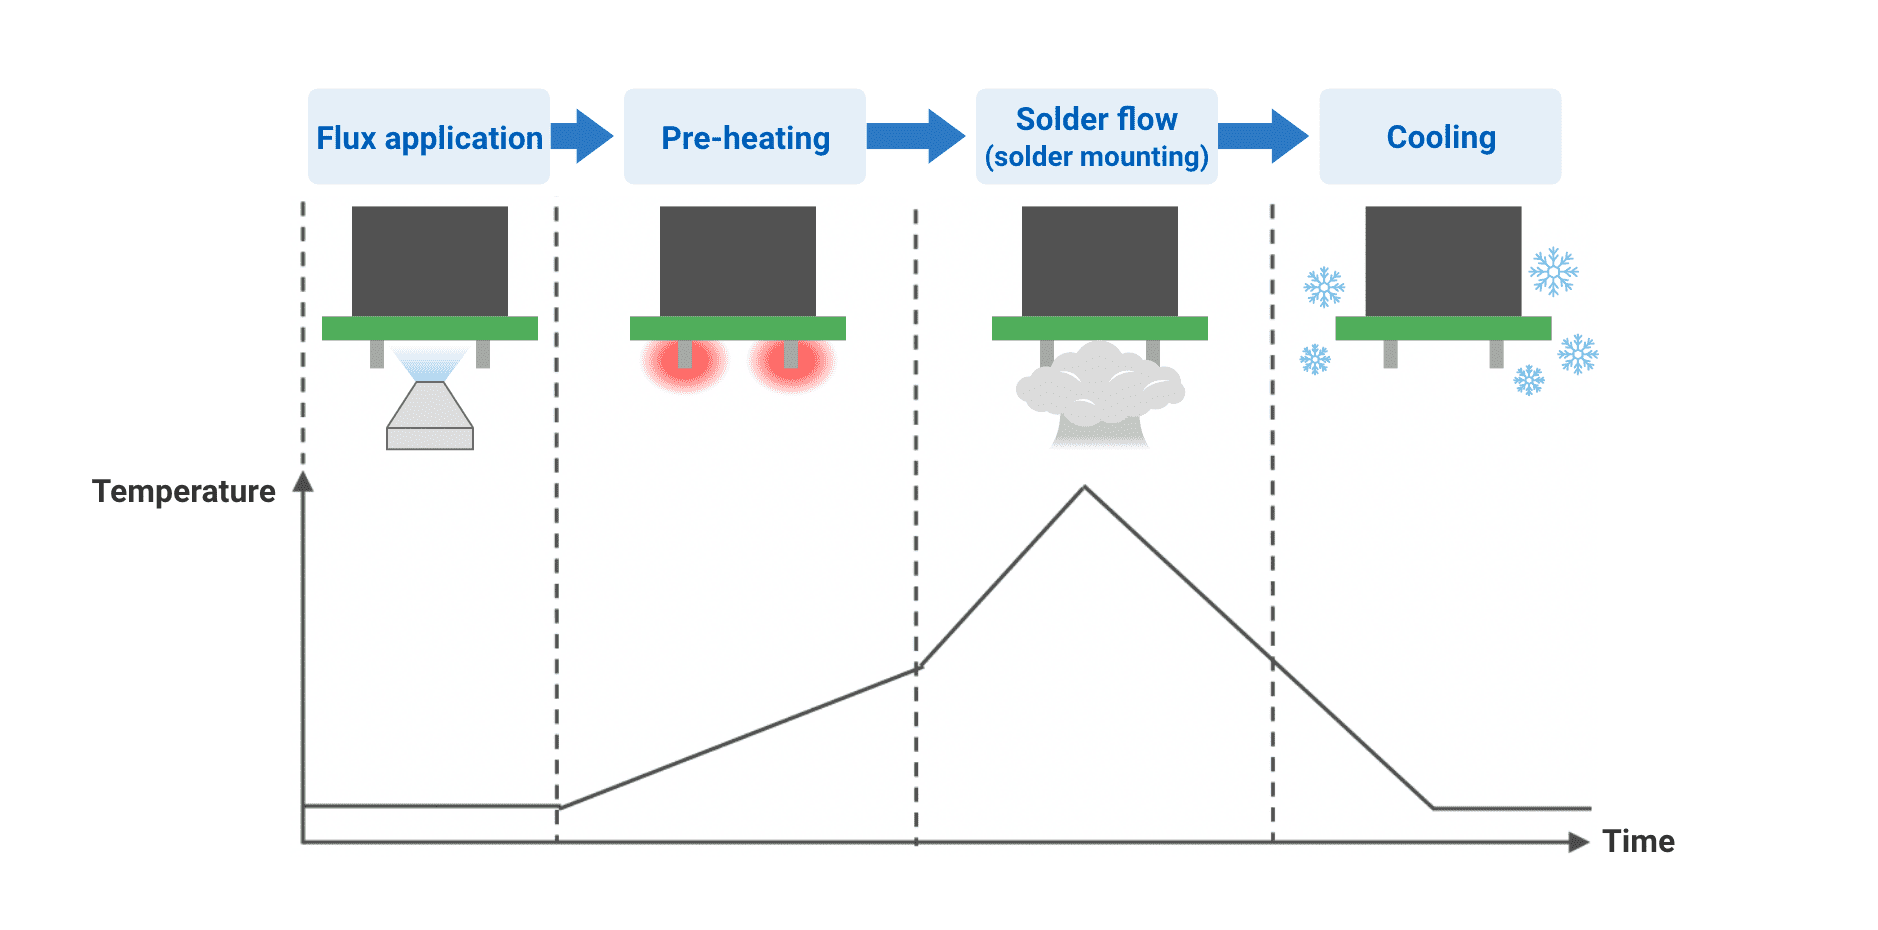 Flux application->Pre-heating->Solder flow (solder mounting)->Cooling